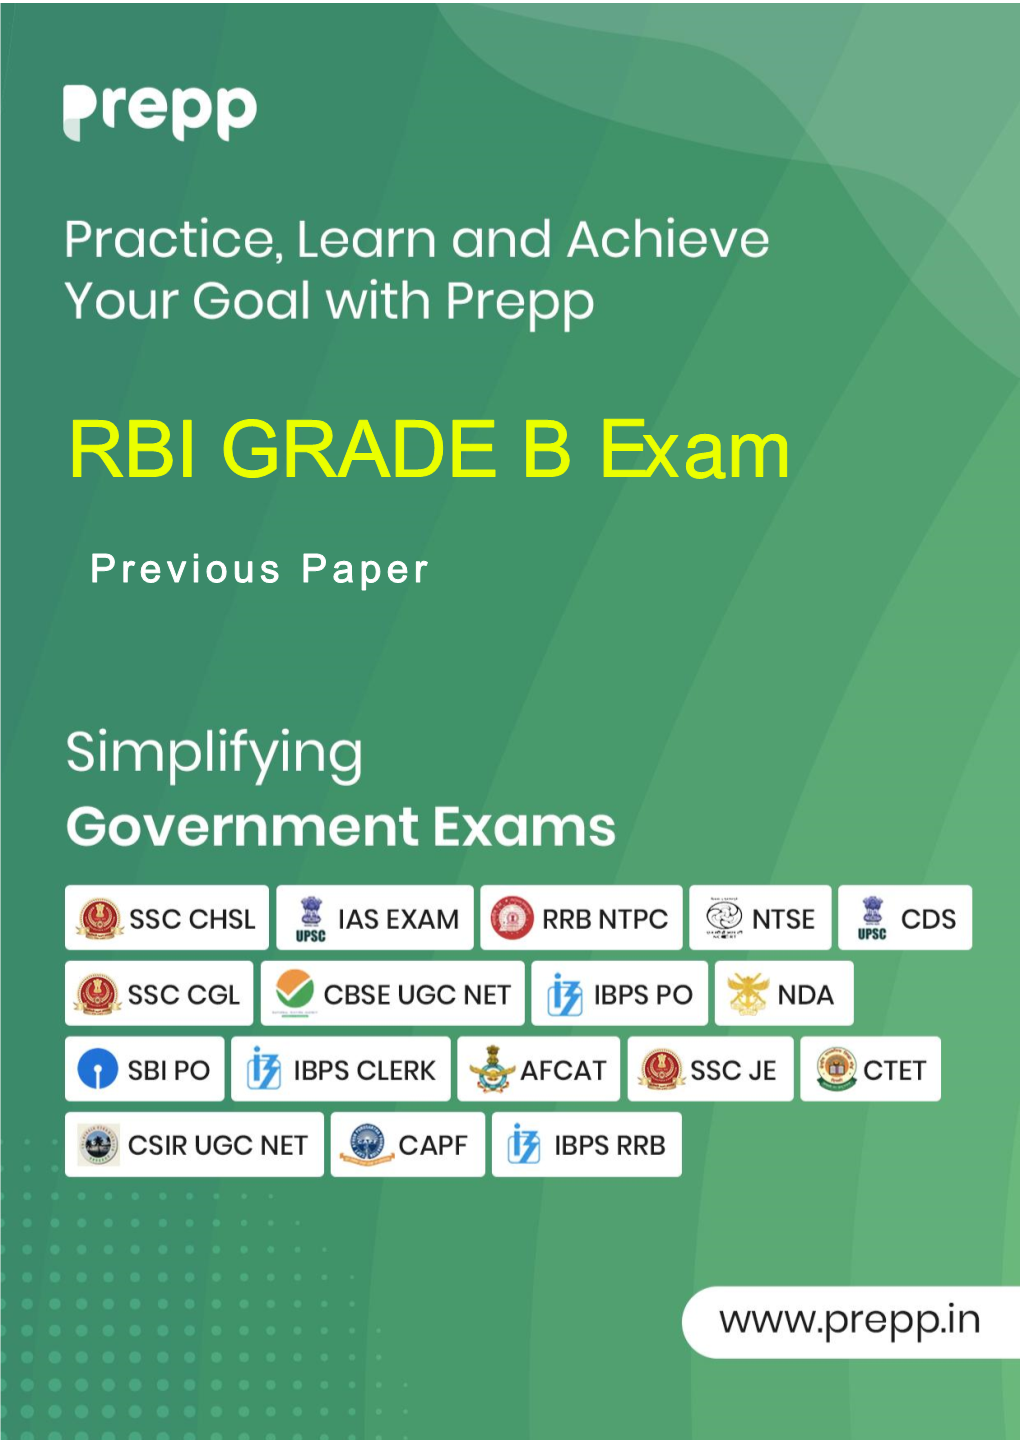 RBI GRADE B Exam